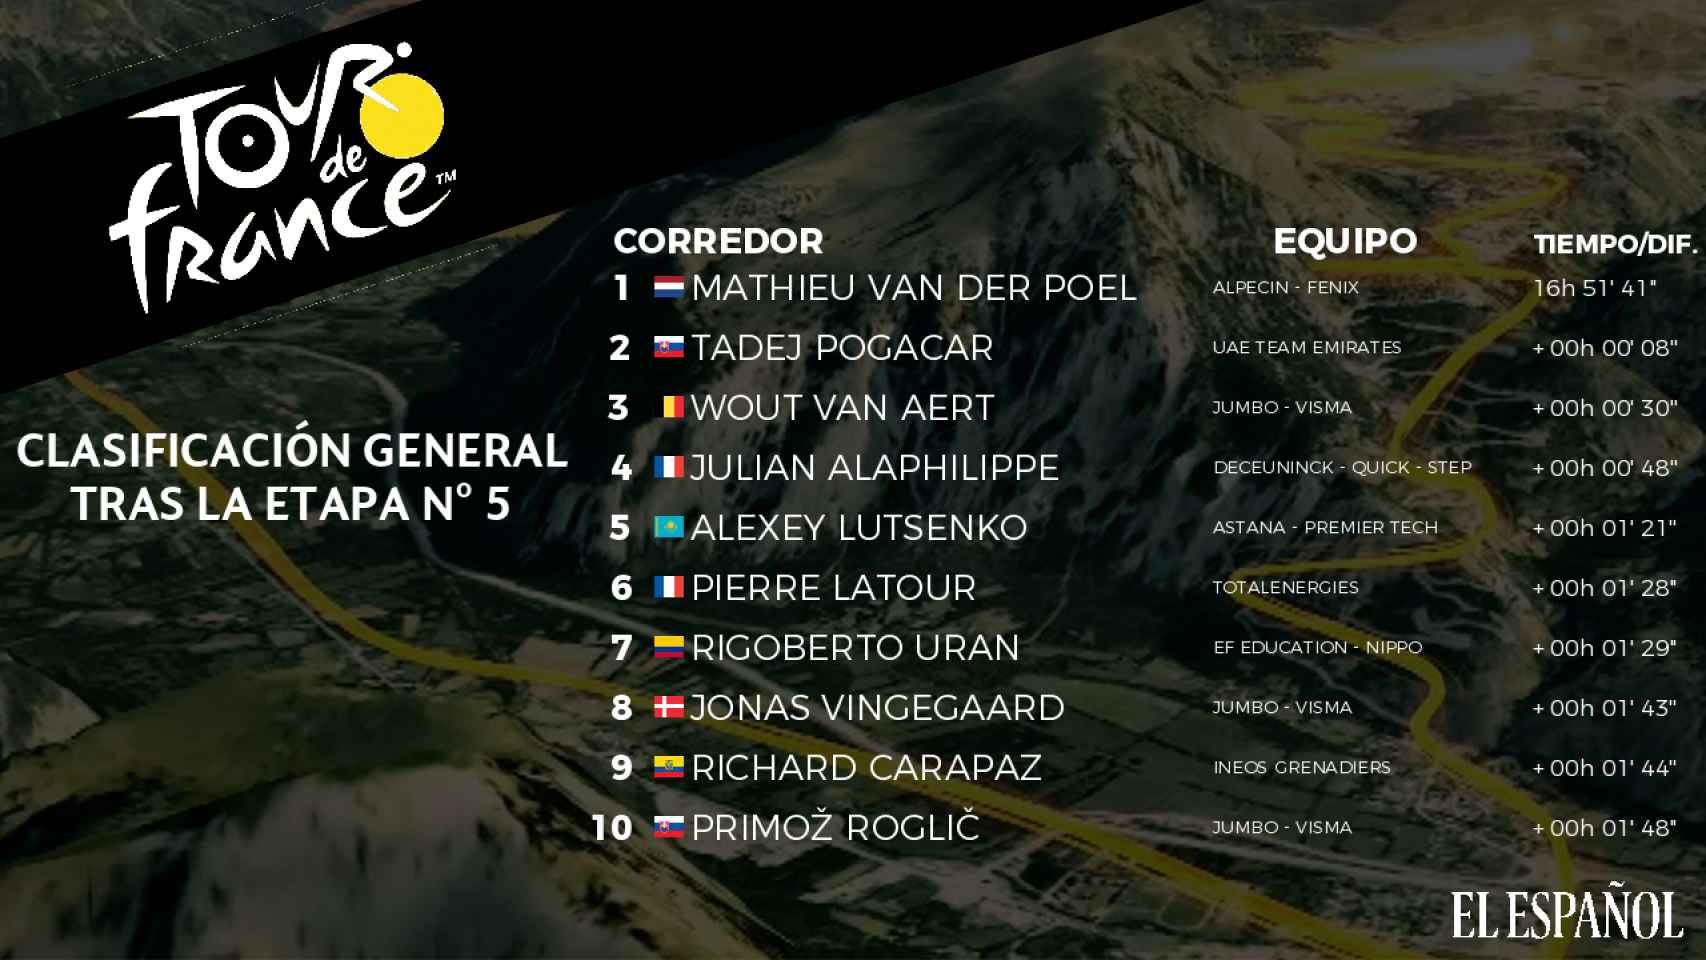 La clasificación de la etapa 5 del Tour de Francia 2021